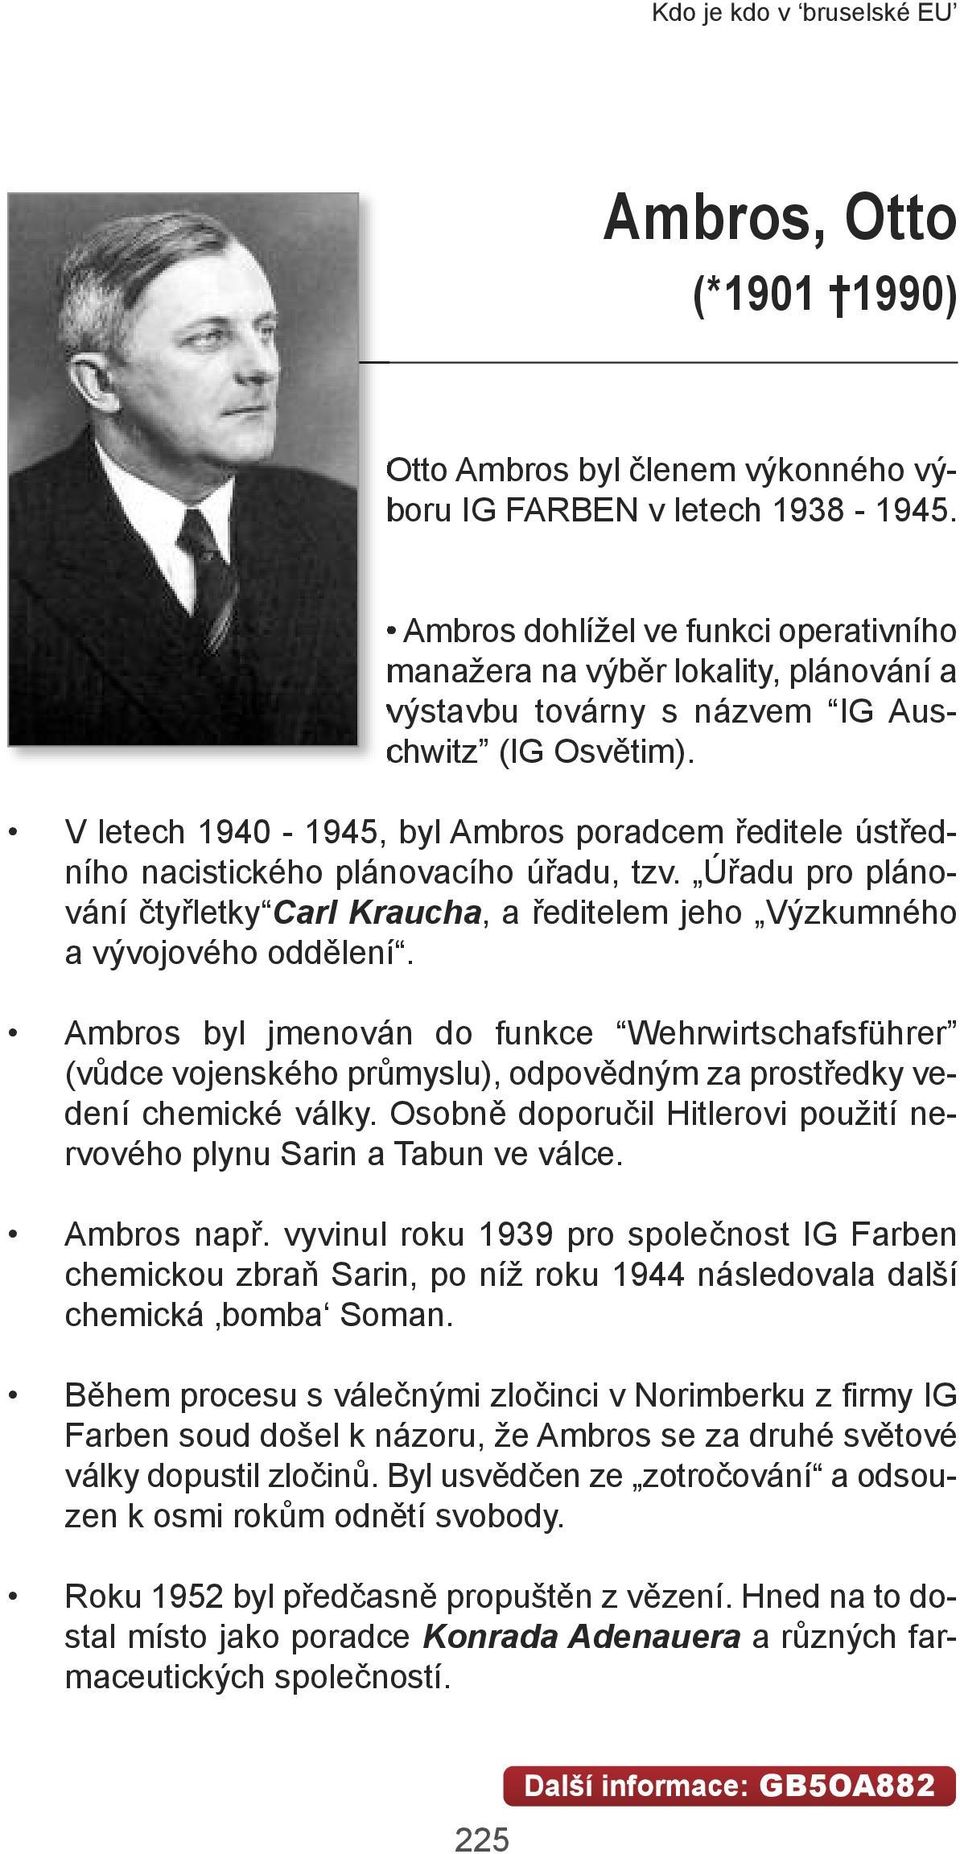 V letech 1940-1945, byl Ambros poradcem ředitele ústředního nacistického plánovacího úřadu, tzv. Úřadu pro plánování čtyřletky Carl Kraucha, a ředitelem jeho Výzkumného a vývojového oddělení.